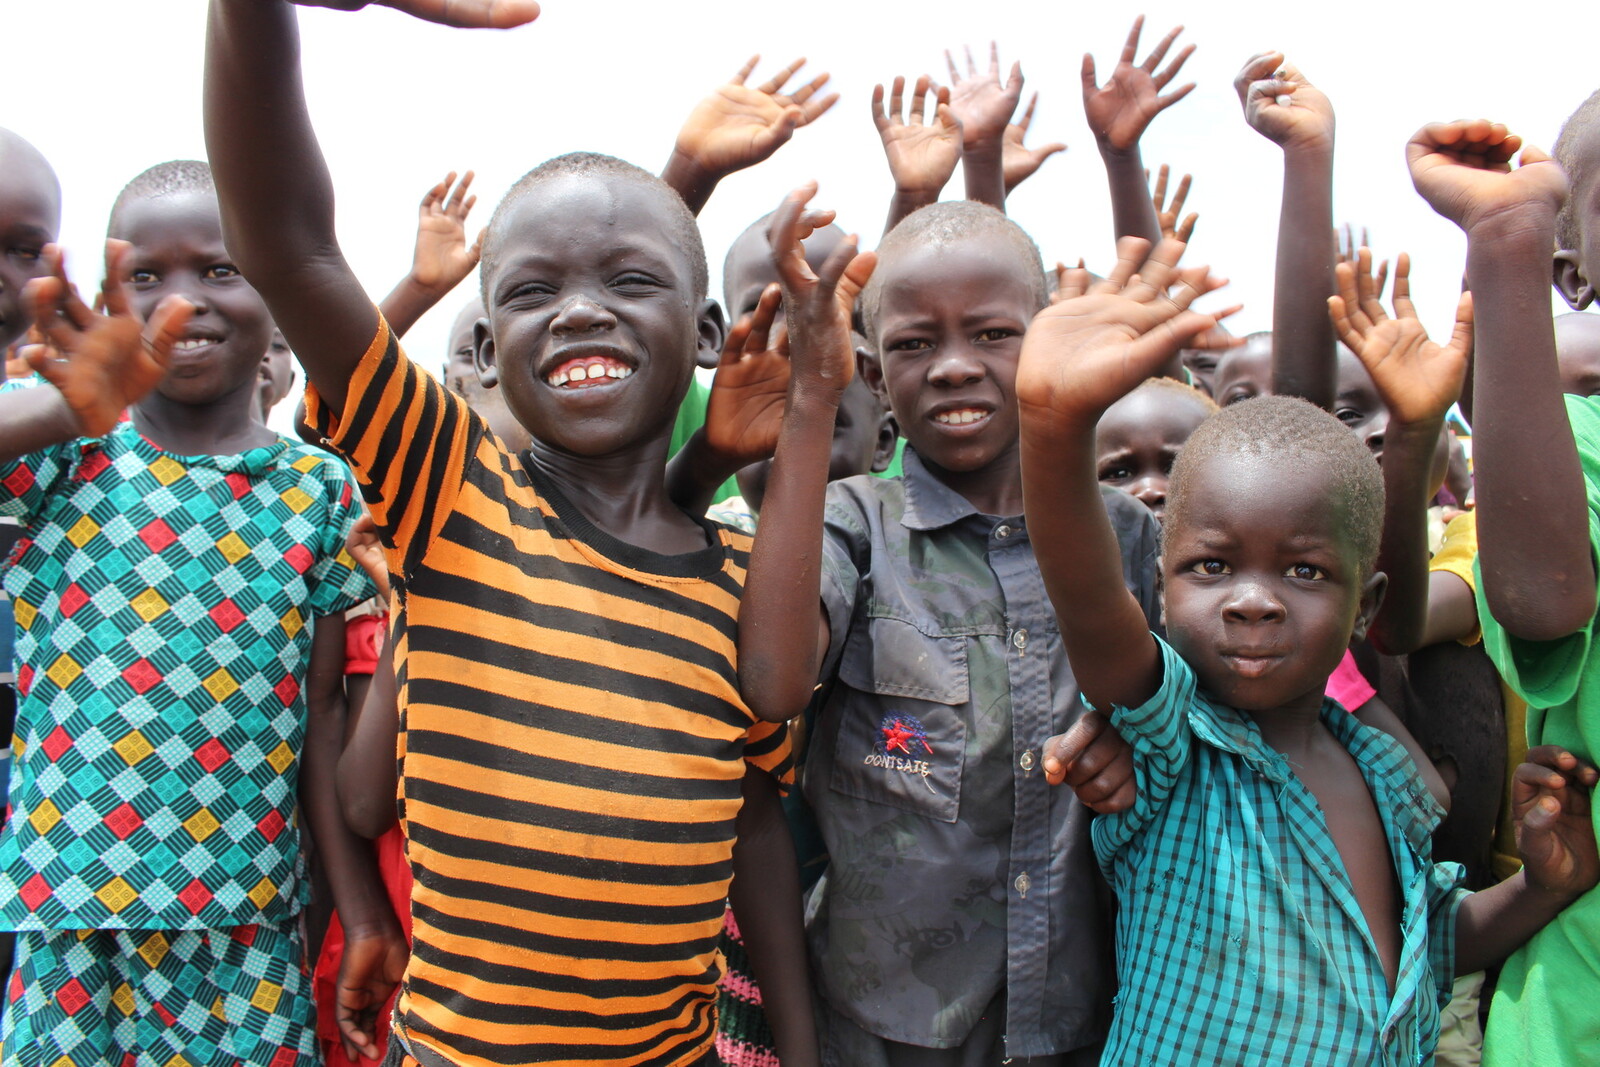 Kinder aus dem Südsudan in Uganda - sie können dank der Hilfe unserer Bündnisorganisationen neue Hoffnung für ihre Zukunft schöpfen.